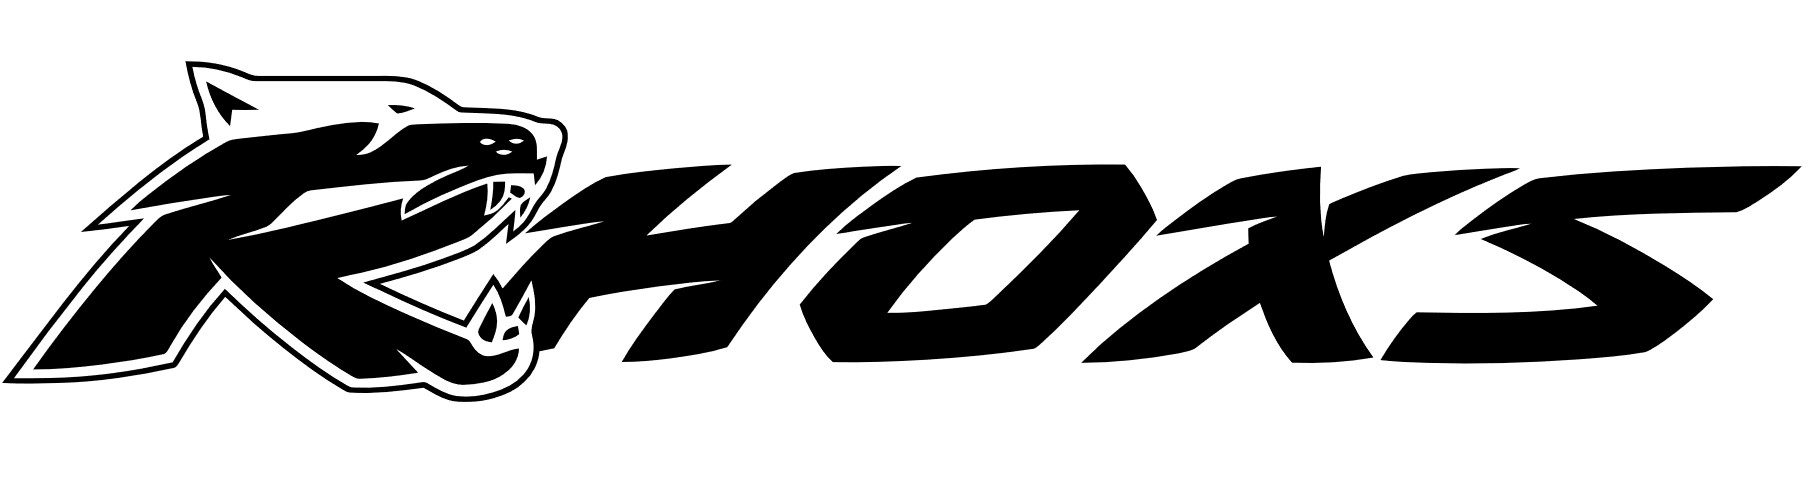 Logotipo RHOXS - Fabricantes de equipación de moto